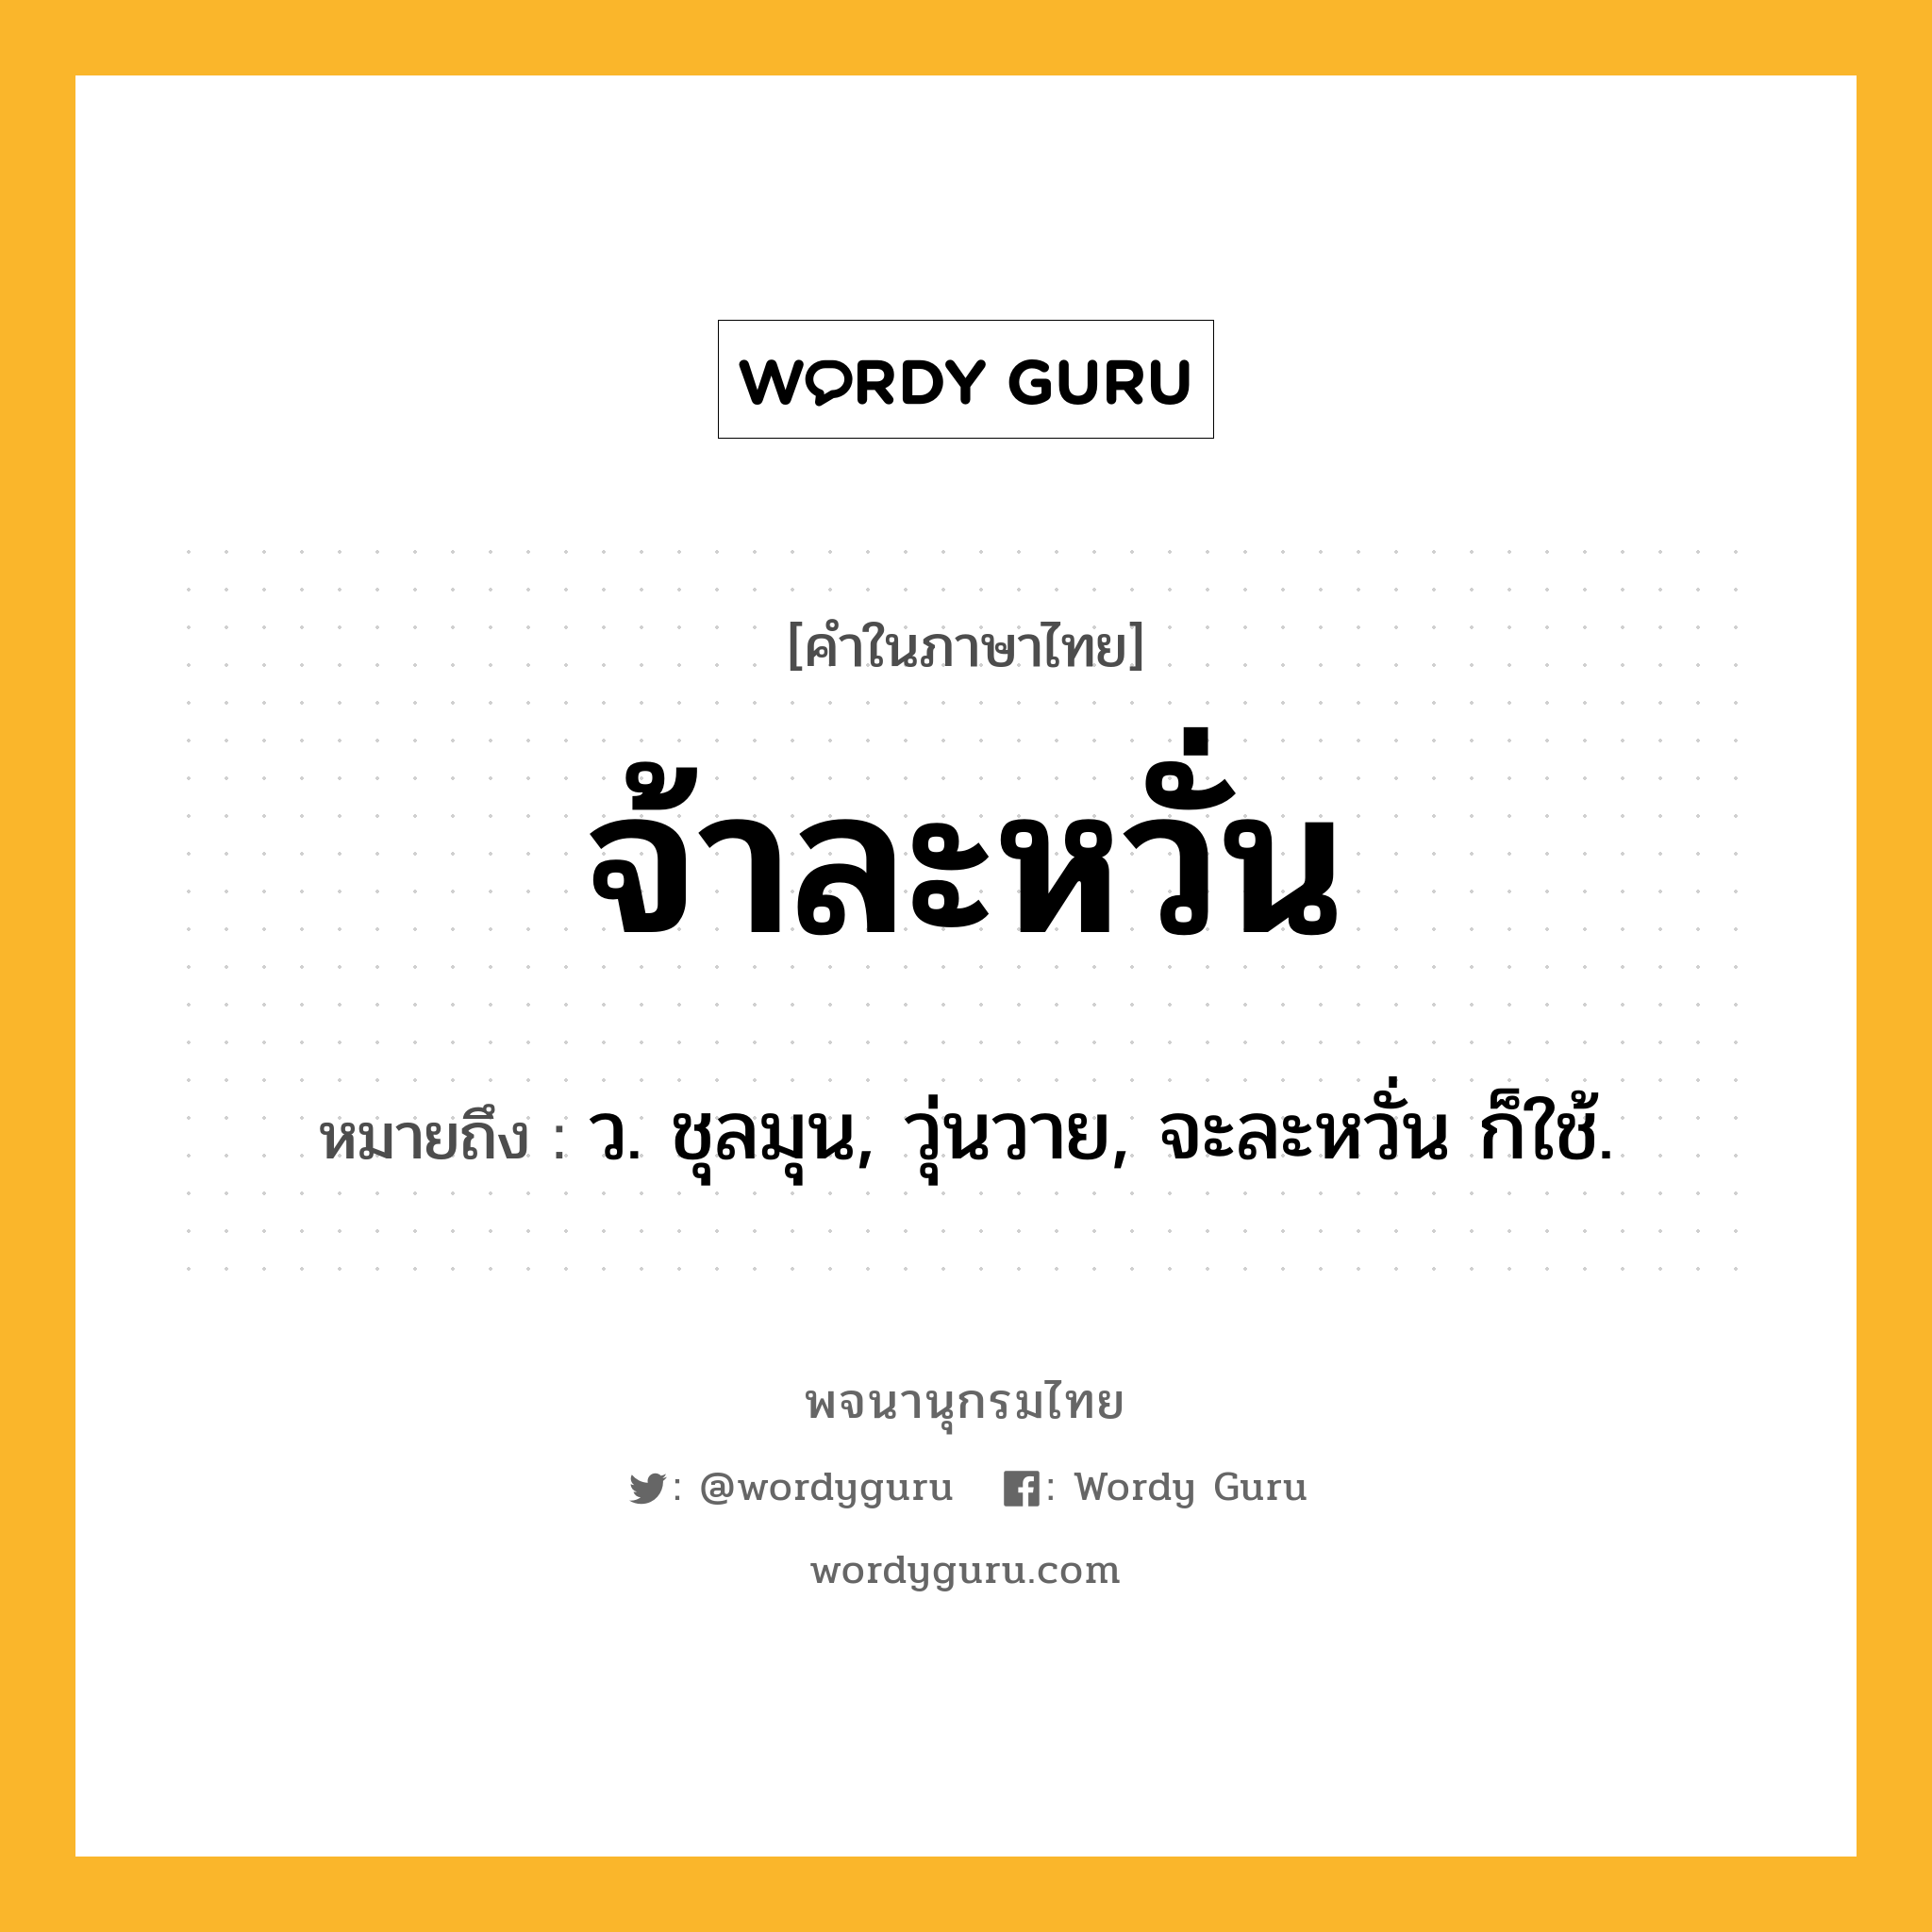 จ้าละหวั่น หมายถึงอะไร?, คำในภาษาไทย จ้าละหวั่น หมายถึง ว. ชุลมุน, วุ่นวาย, จะละหวั่น ก็ใช้.